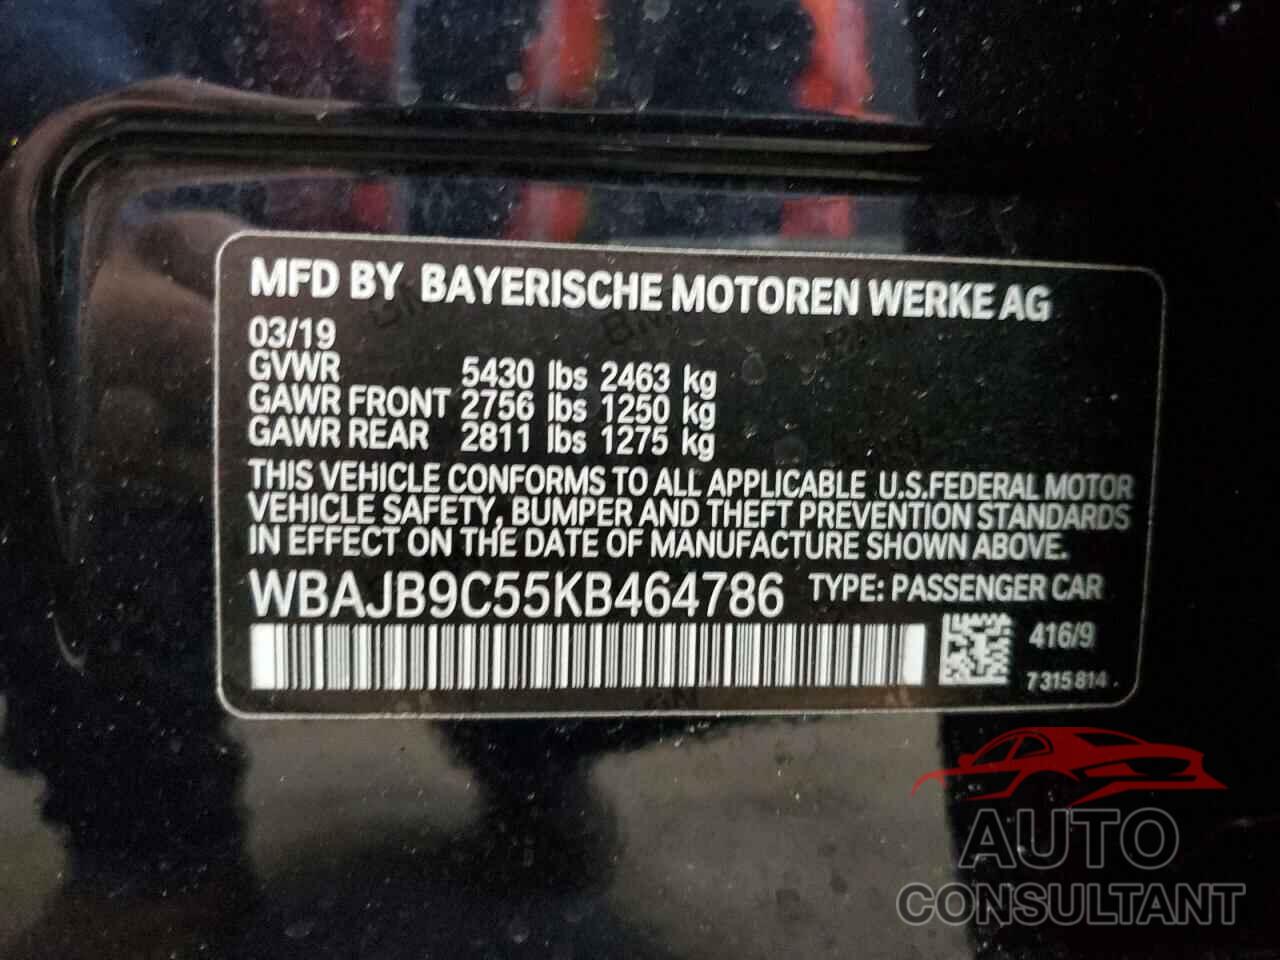 BMW M5 2019 - WBAJB9C55KB464786